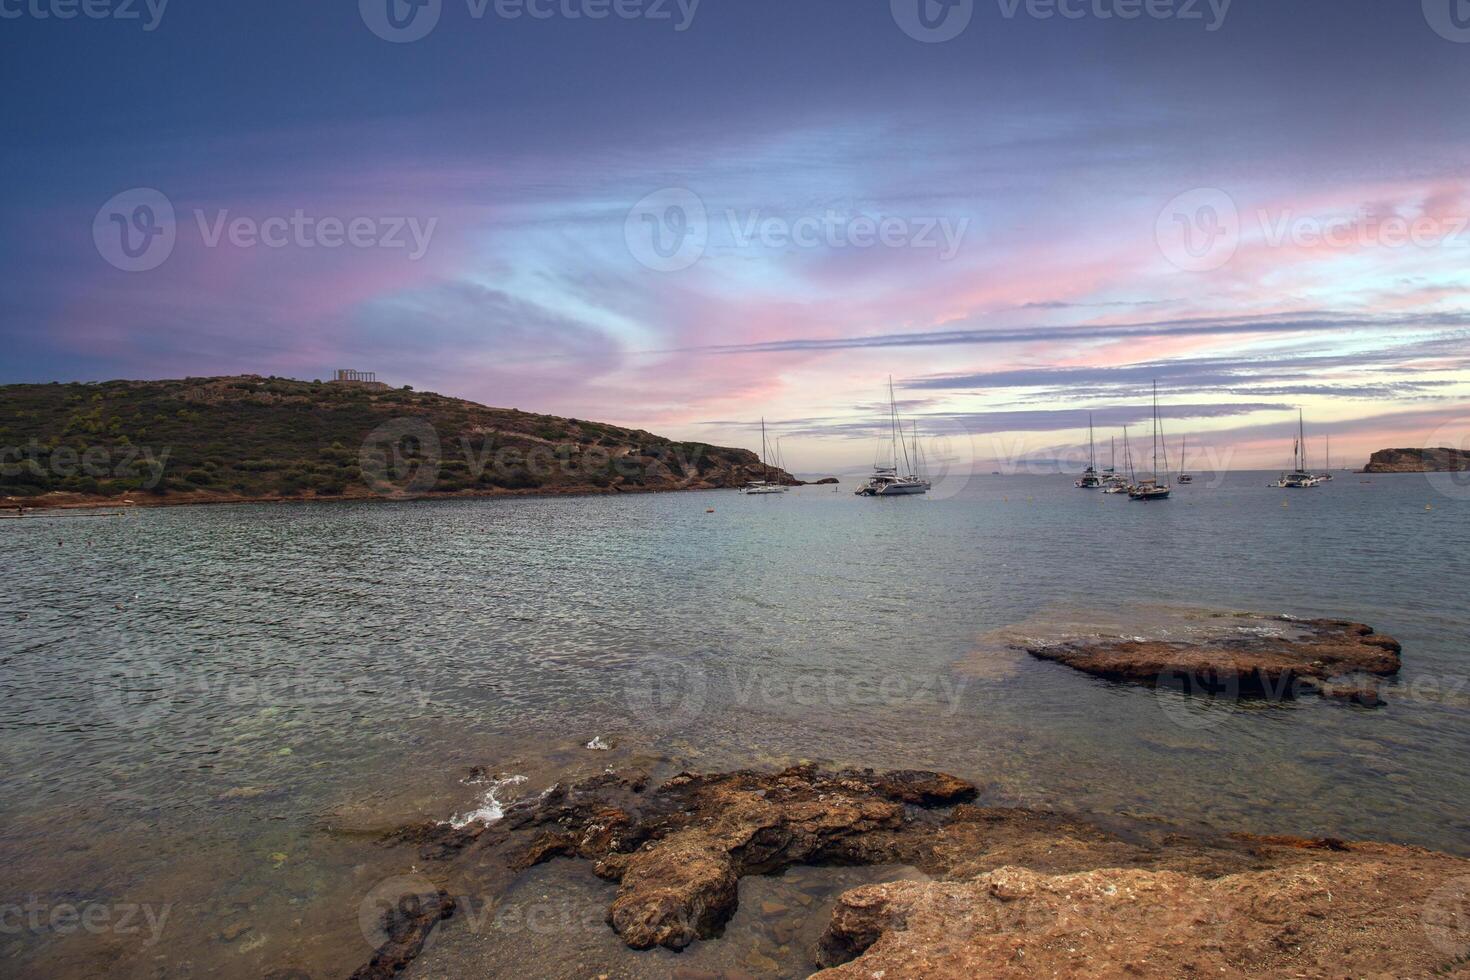 a il Egeo mare vicino il tempio di poseidon nel unione, Grecia, testimone un' travolgente tramonto con colorato nuvole con Barche circostante il maestoso poseidon tempio foto